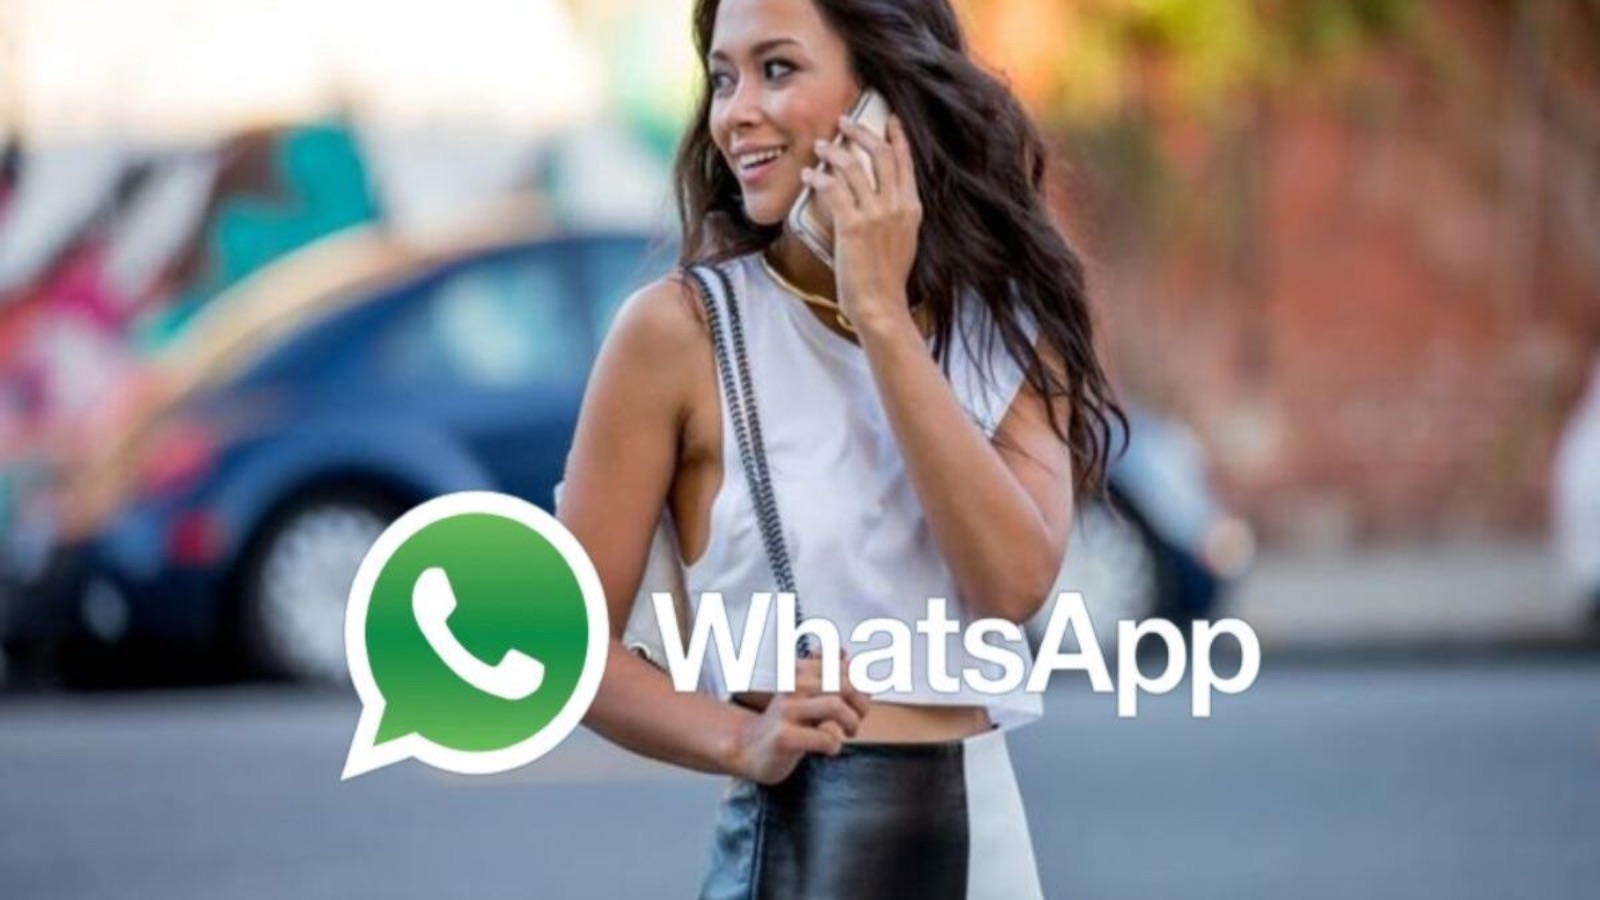 WhatsApp, TRE funzioni shock per gli utenti prese dall'esterno